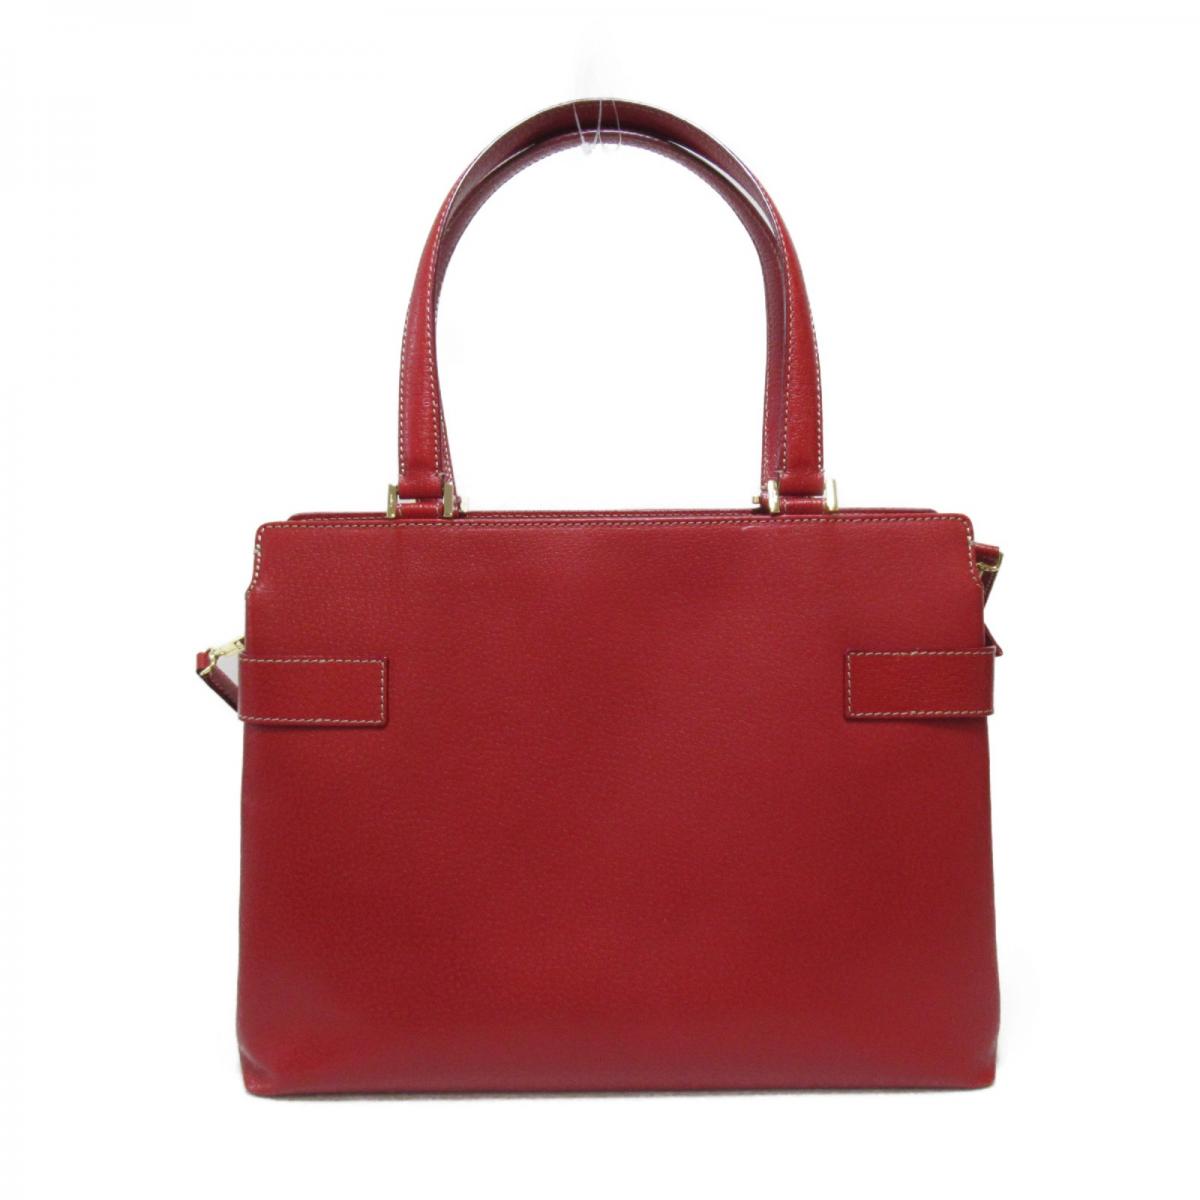 Gancini Leather Handbag DY-21 1347